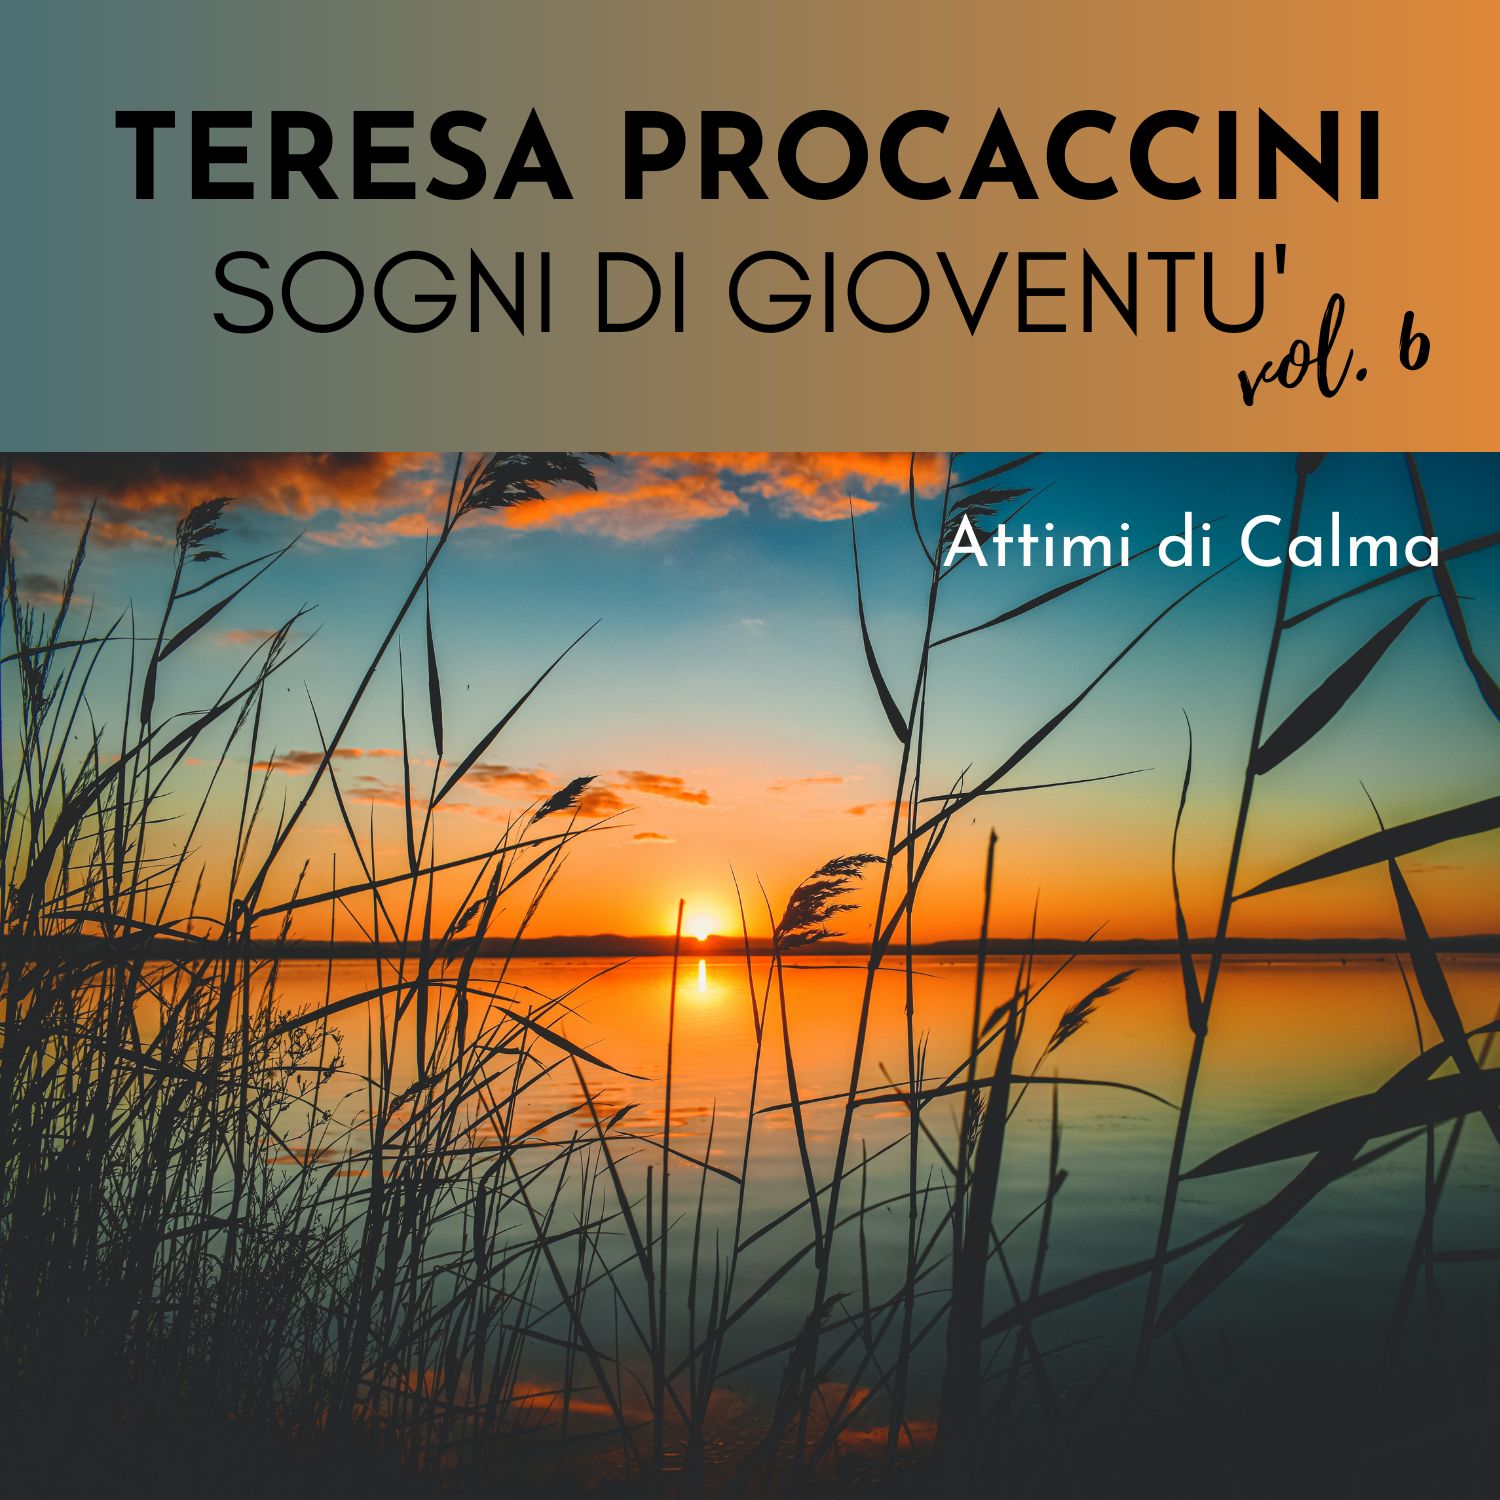 Teresa Procaccini: Sogni di gioventù, Vol. 6 (Attimi di calma)